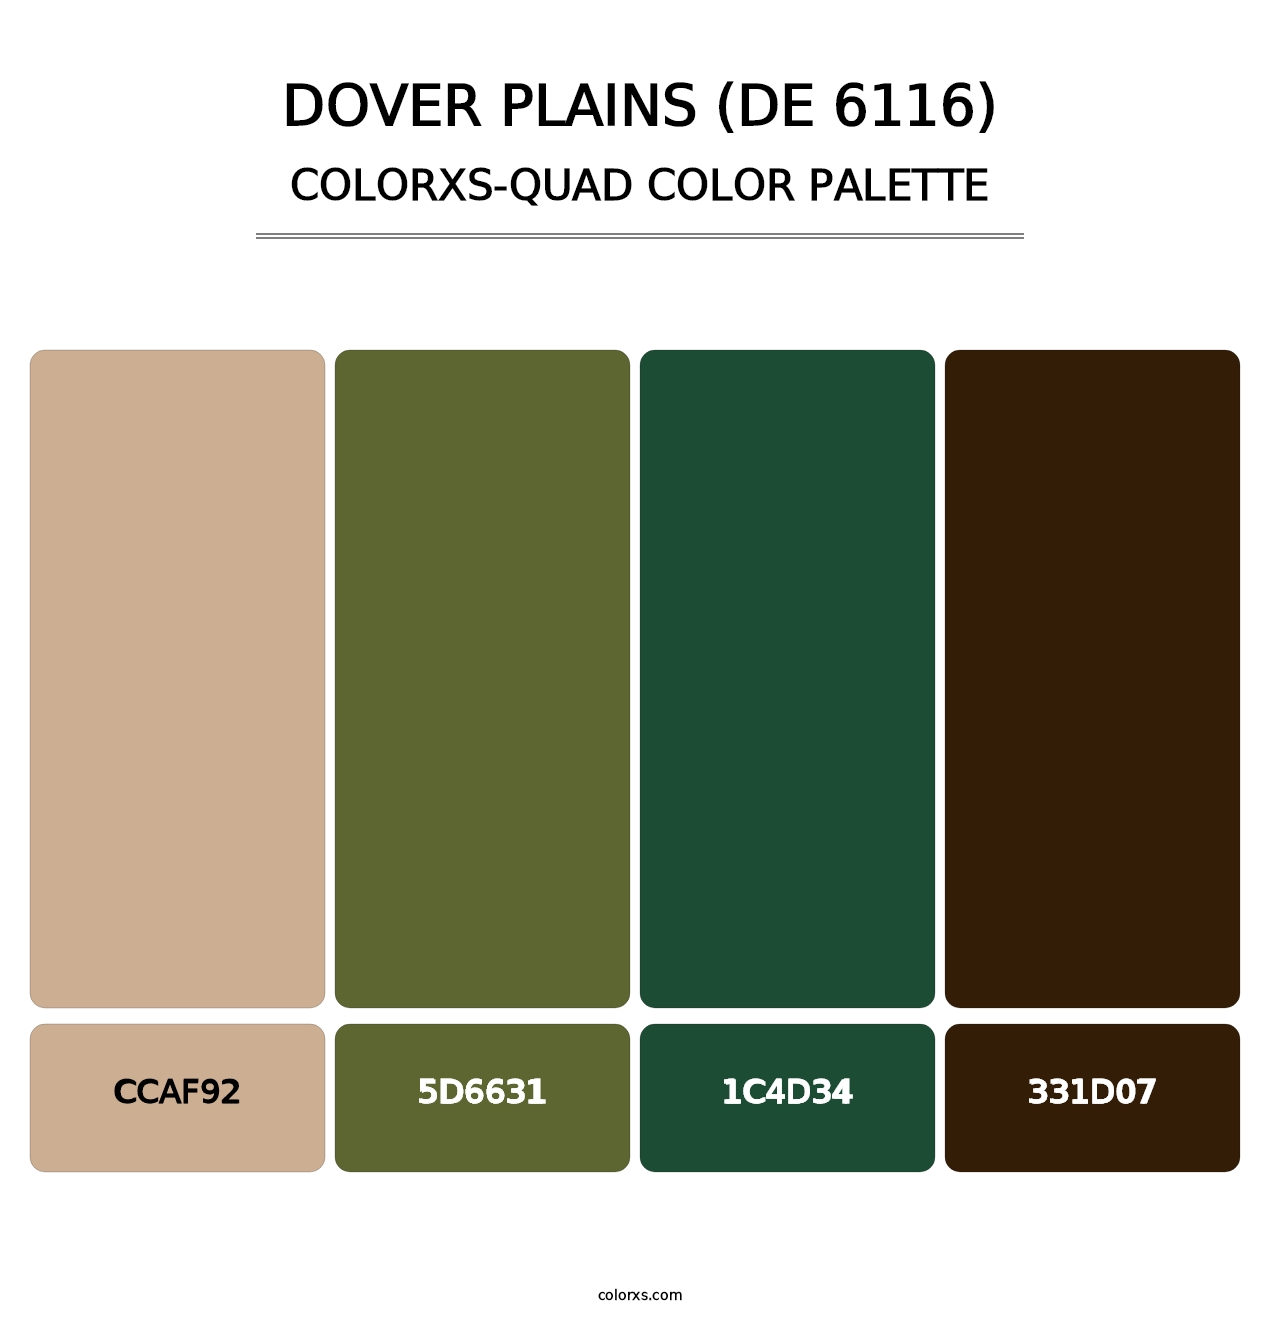 Dover Plains (DE 6116) - Colorxs Quad Palette